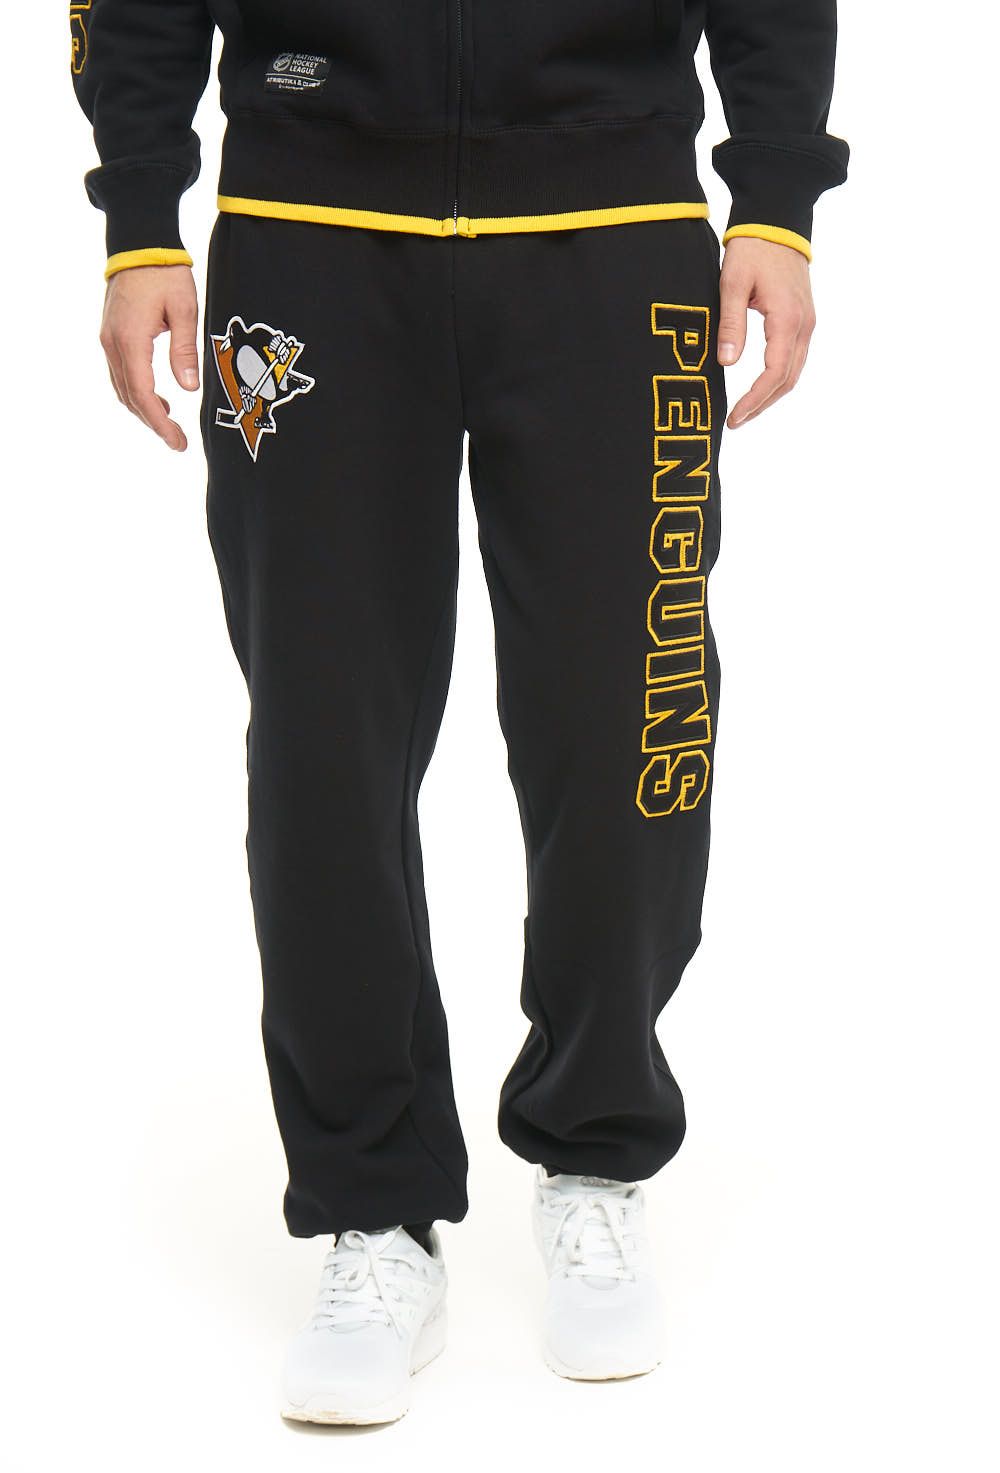 Спортивные брюки мужские Atributika&Club Питтсбург Пингвинз 45920 черные S